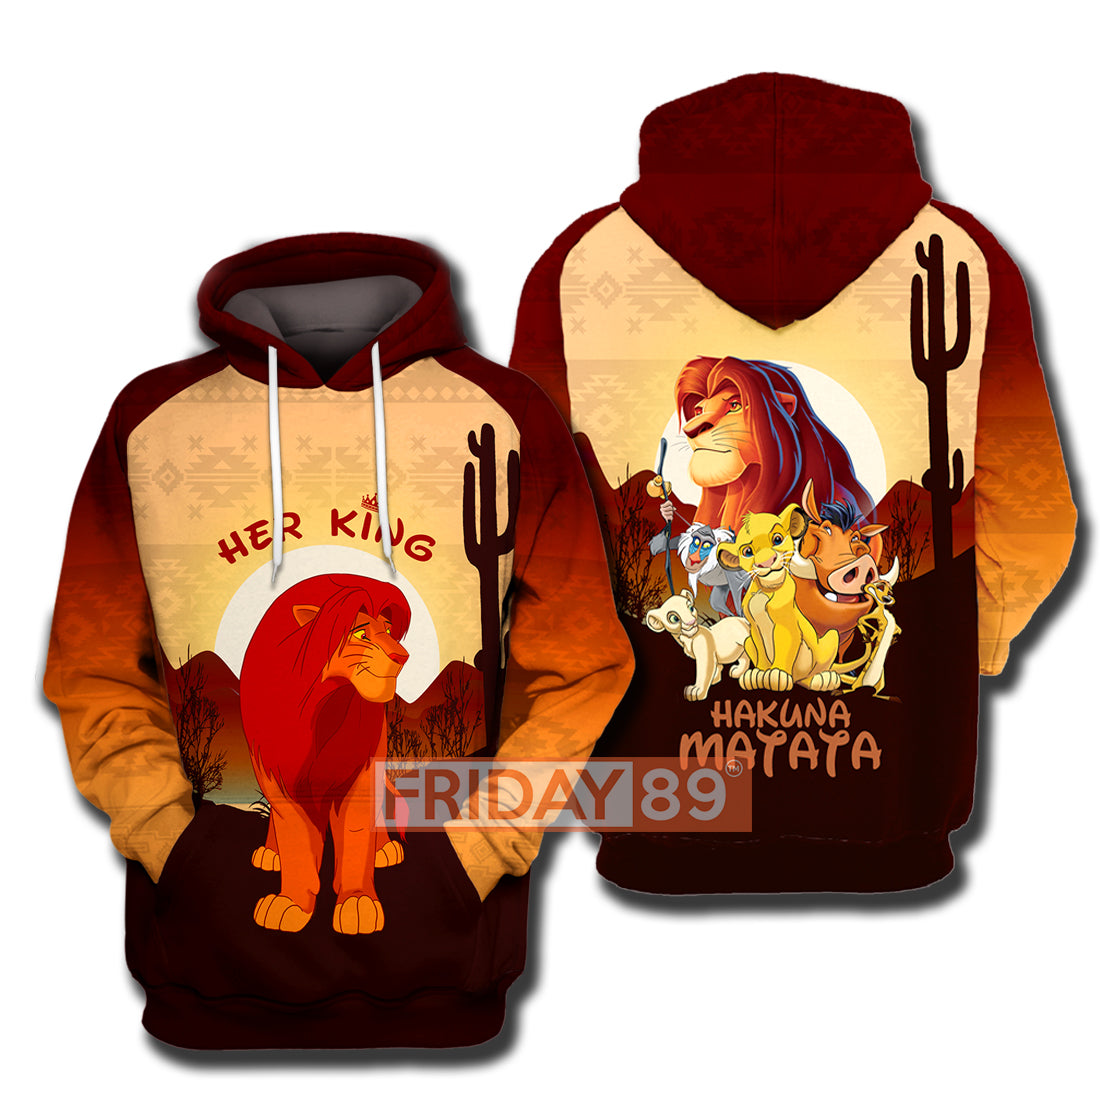 Unifinz DN LK T-shirt Her King Simba Hakuna Matata DN LK Hoodie DN LK Shirt Sweater Tank DN LK Couple Hoodie 2022